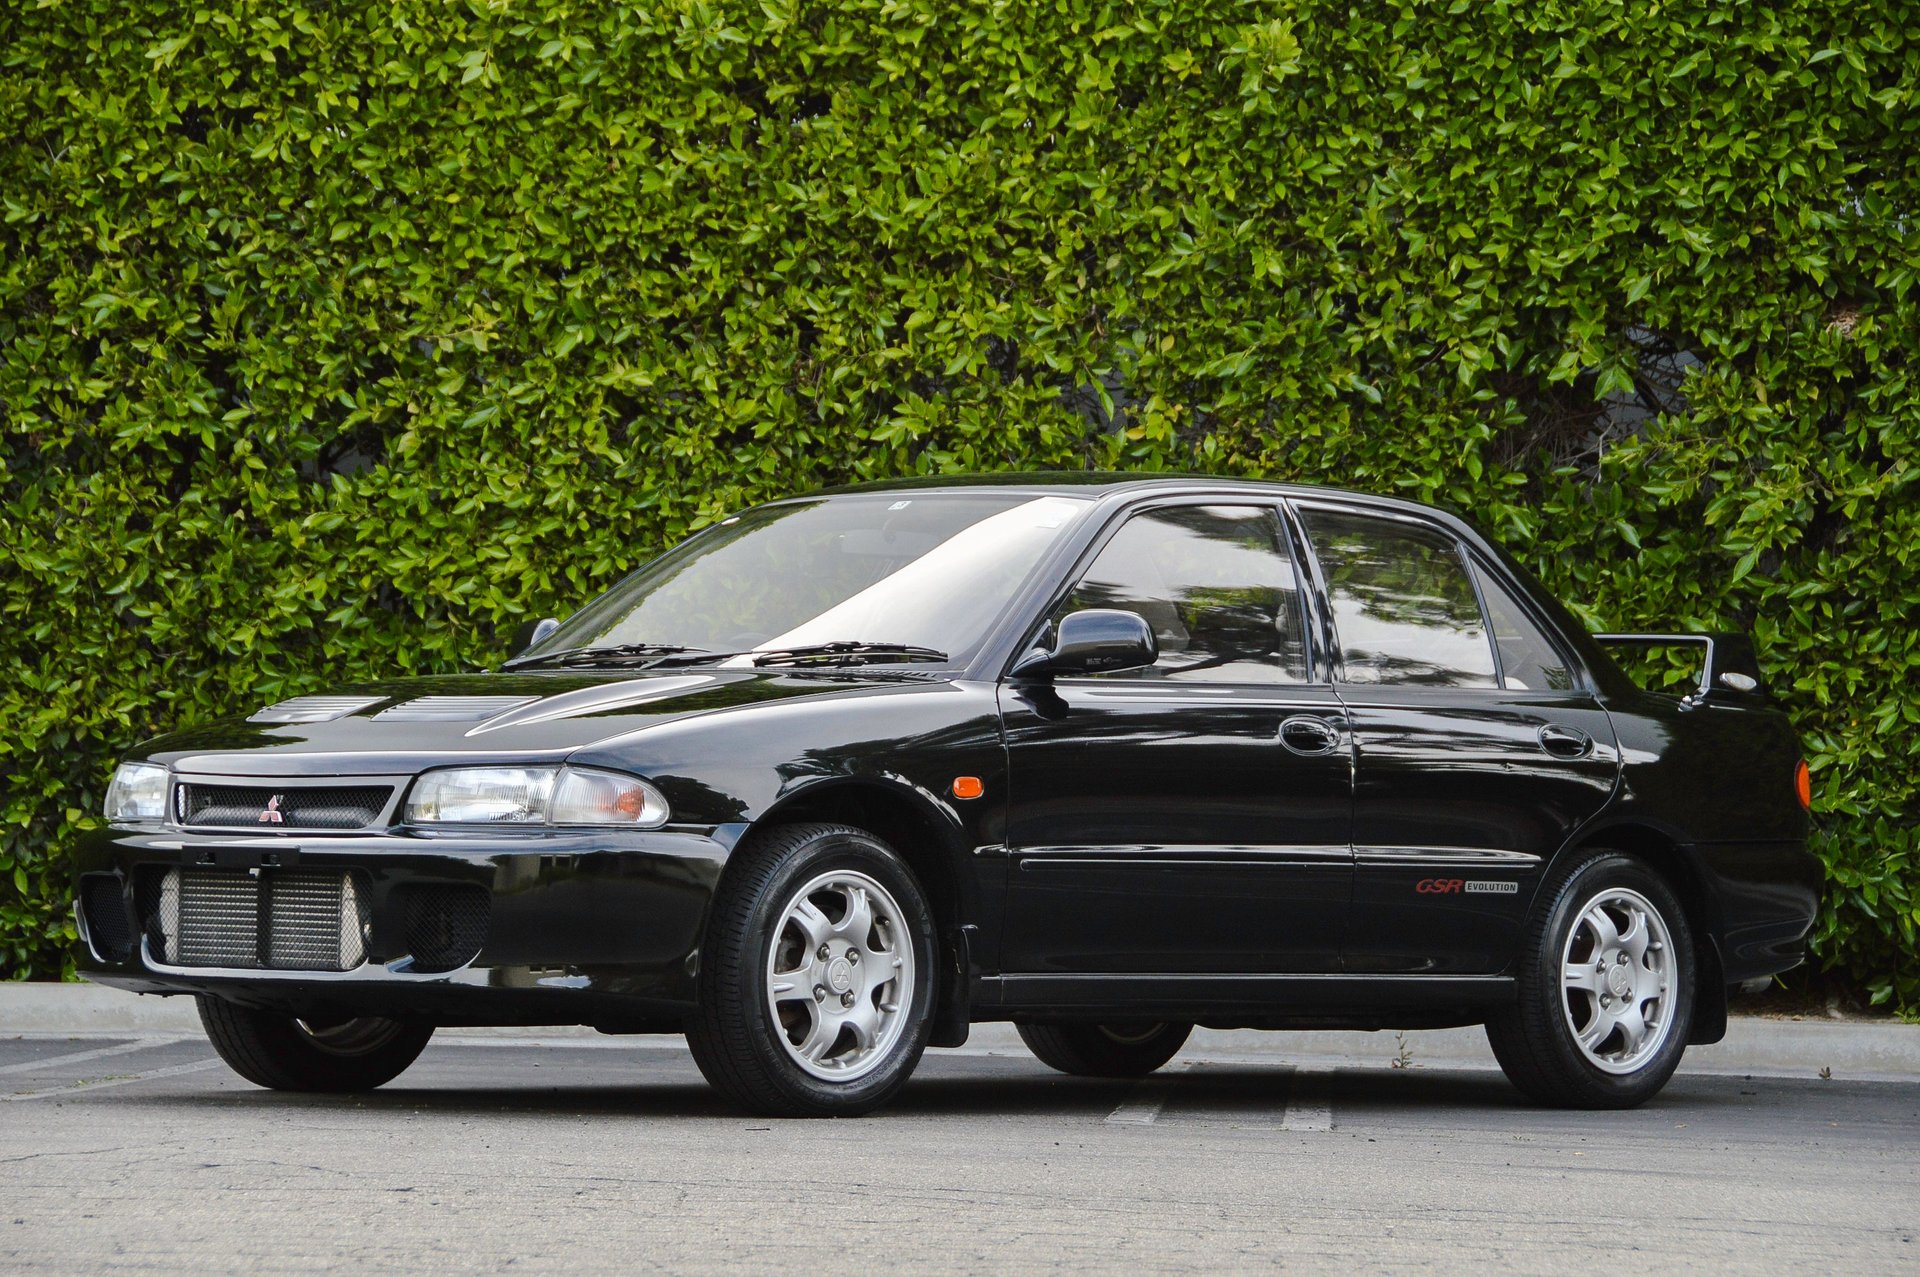 1993 Mitsubishi Evolution GSR